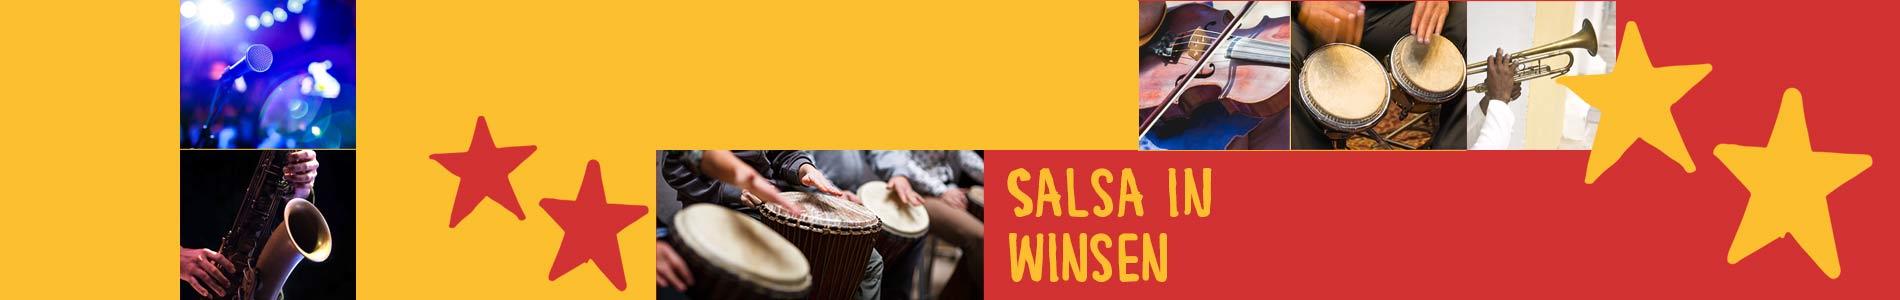 Salsa in Winsen – Salsa lernen und tanzen, Tanzkurse, Partys, Veranstaltungen